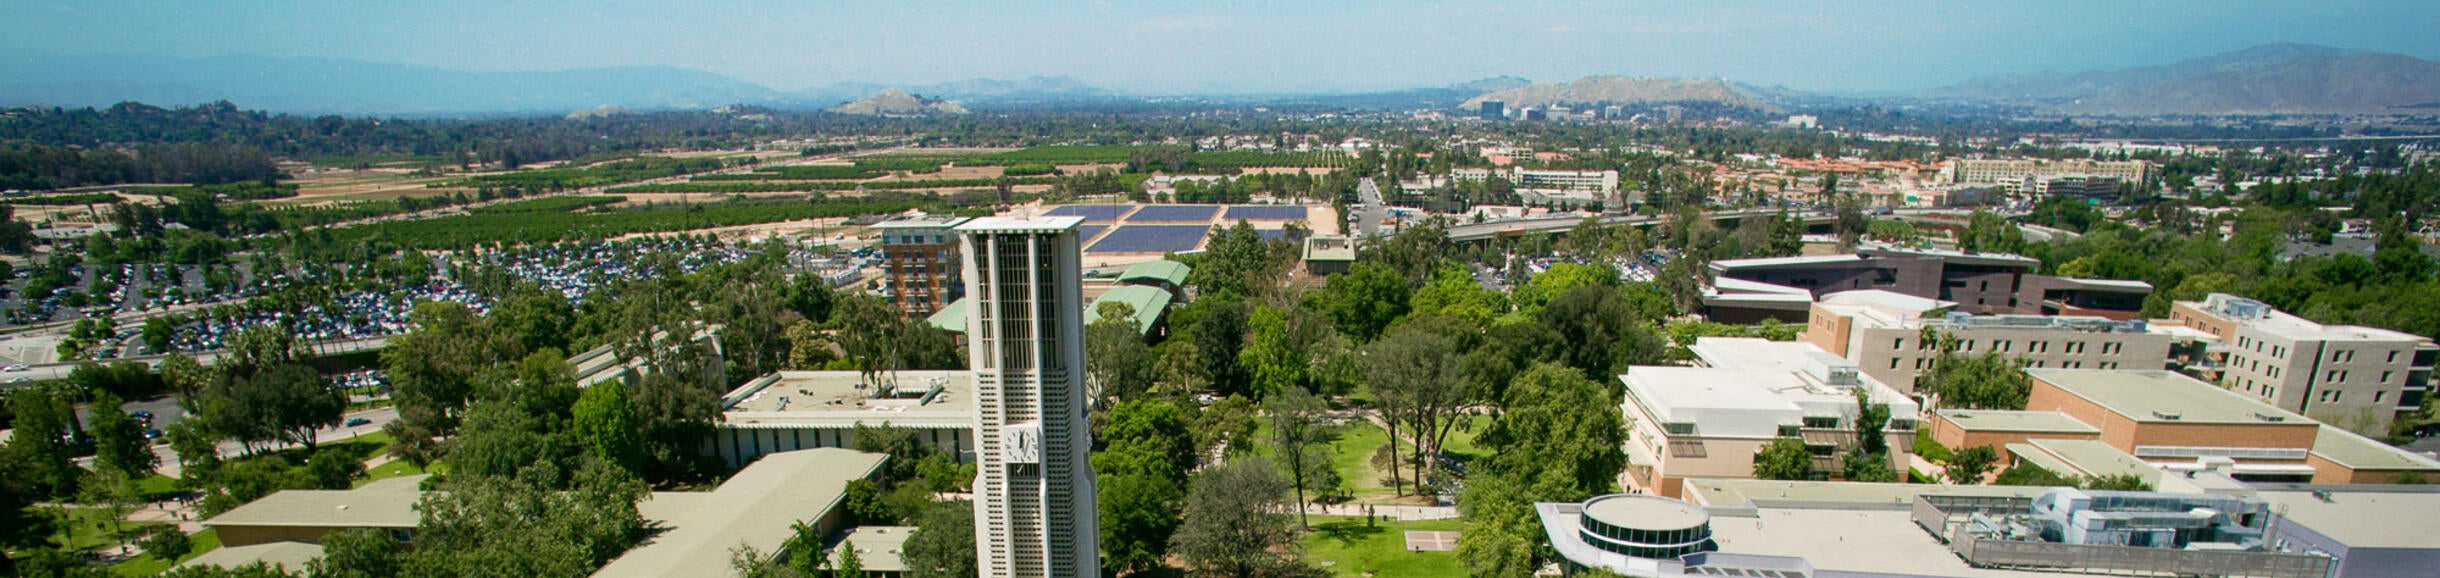 UCR Campus Aerial View